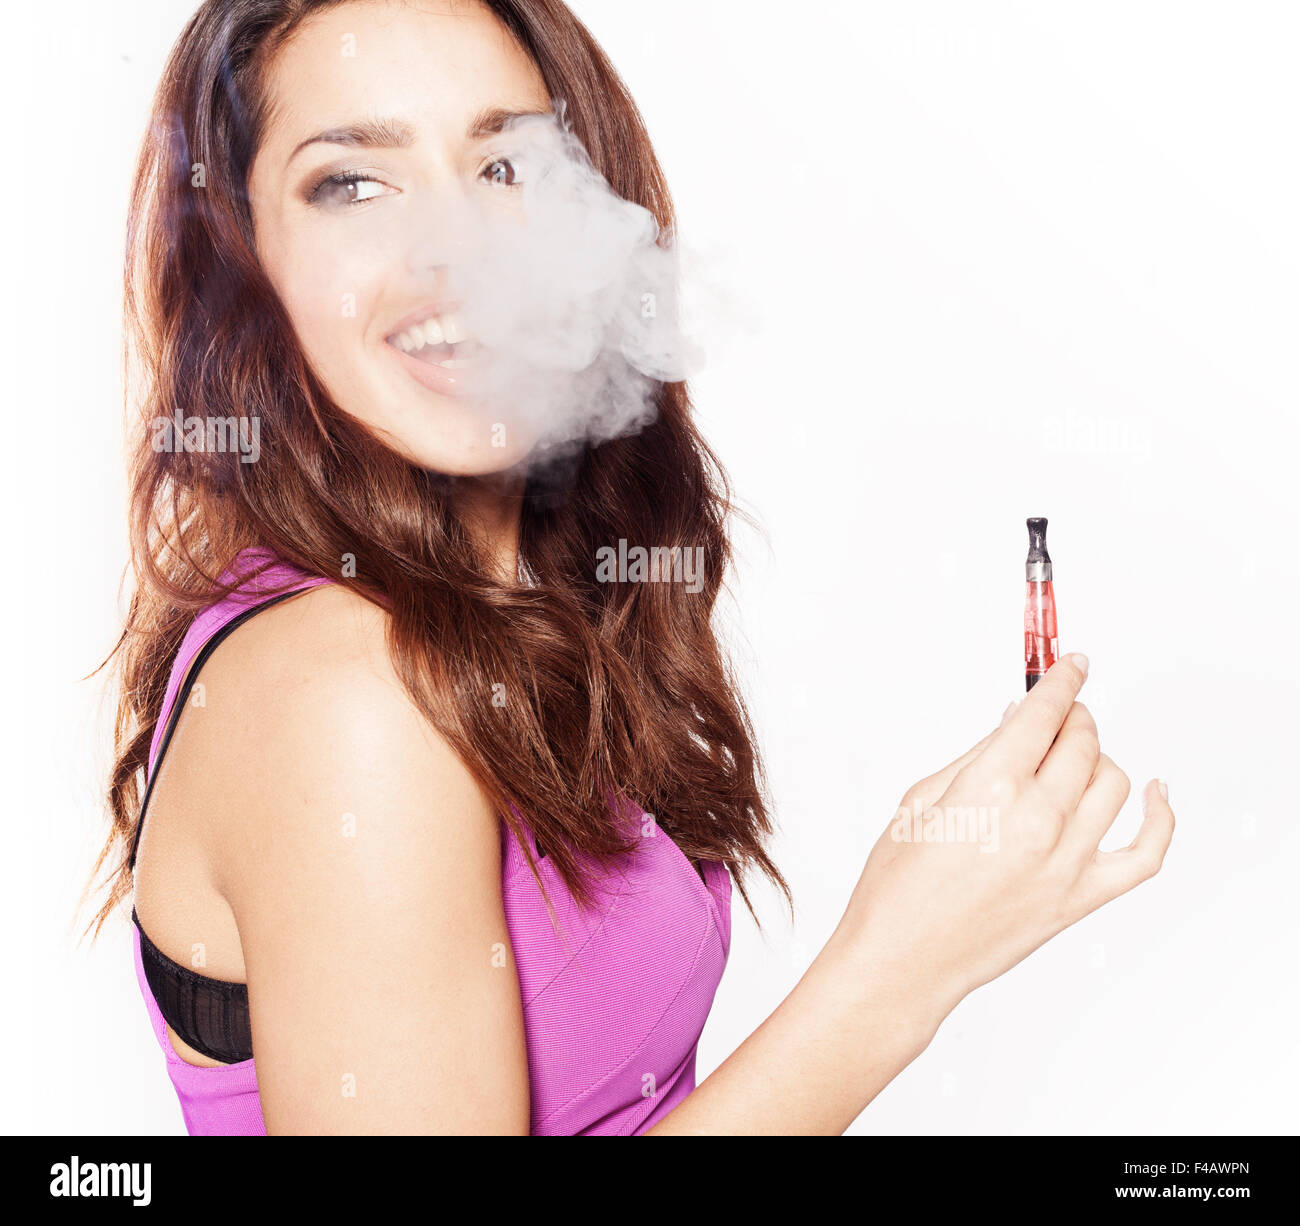 woman smoking e-cigarette Stock Photo